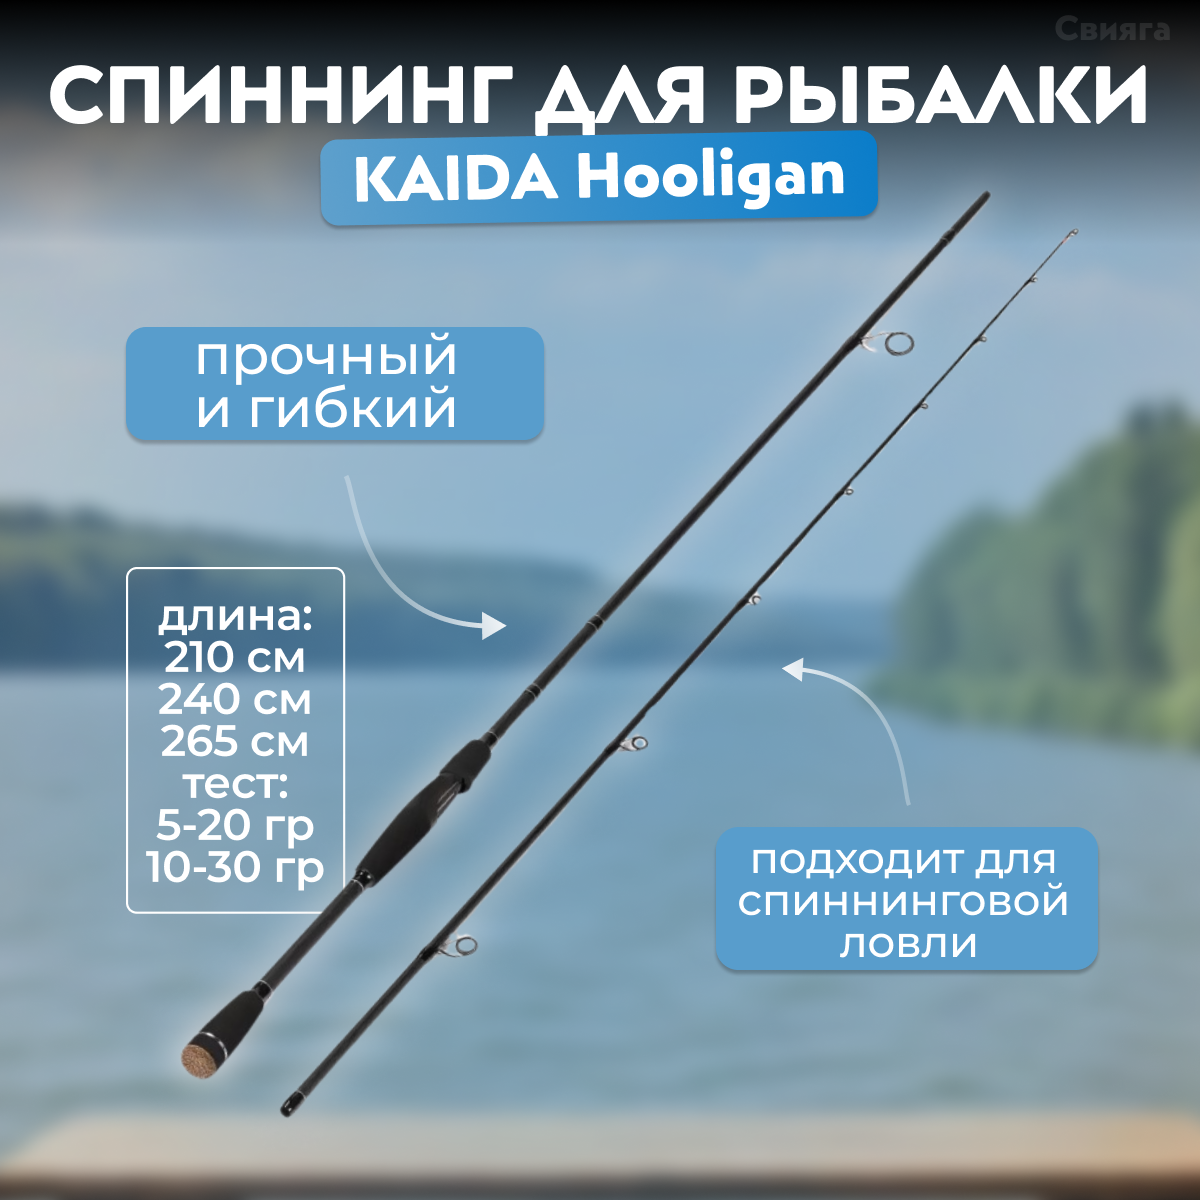 Ультралегкий штекерный спиннинг для летней рыбалки на щуку, 2,1 м, 5-20 гр